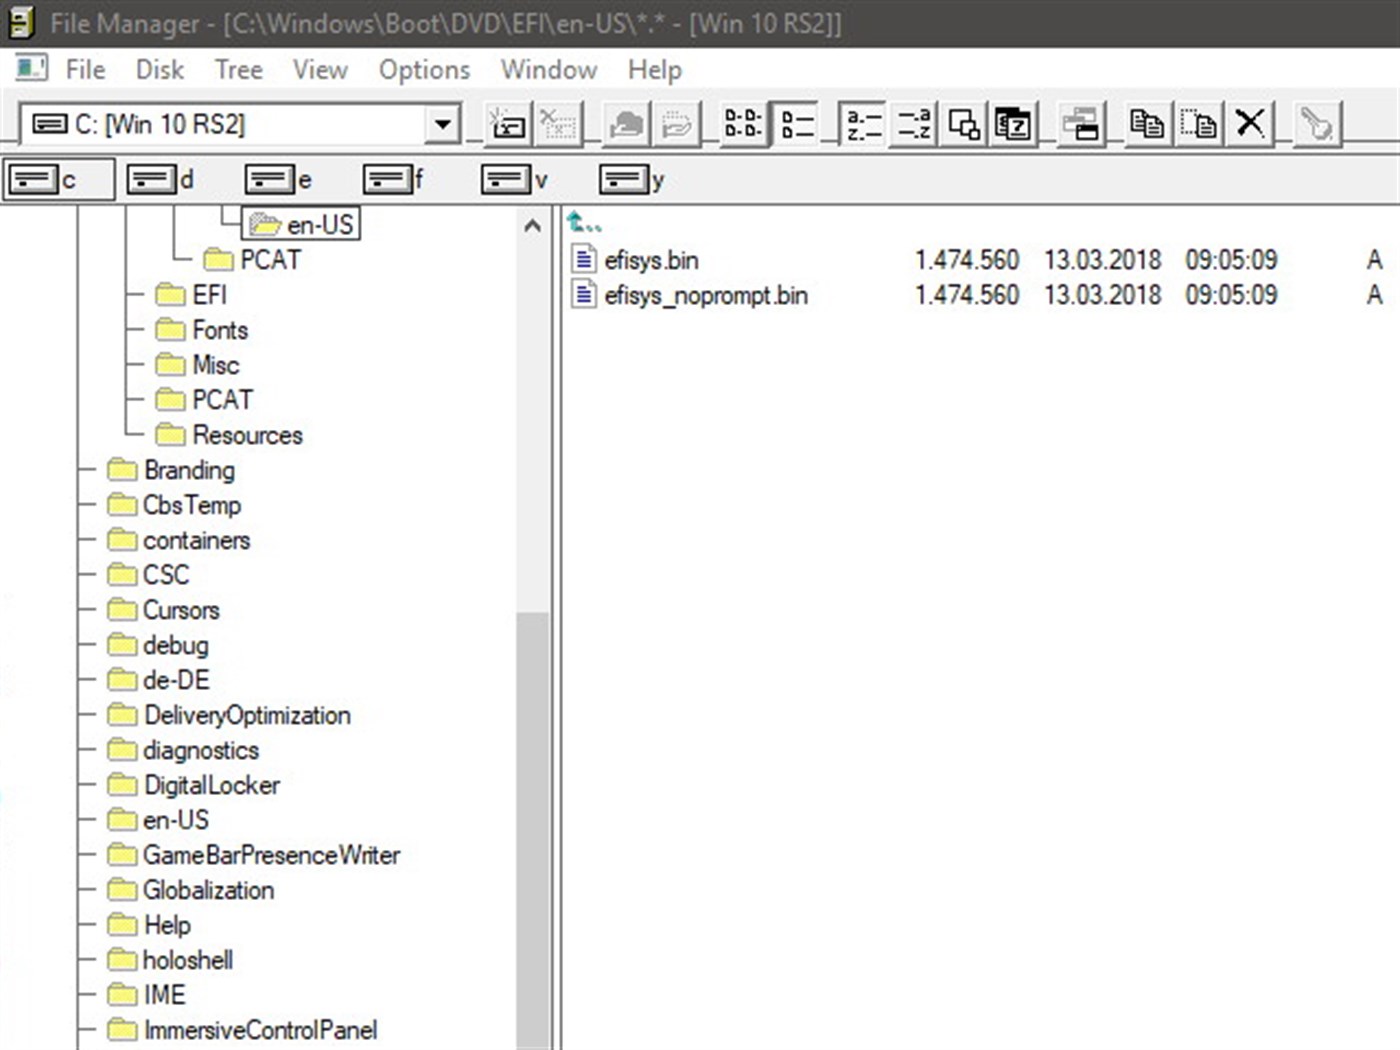 Classic Windows File Manager Apps.45031.14100202716545111.ad1e66cb-191f-449f-80b6-9bbb7e7a01d9